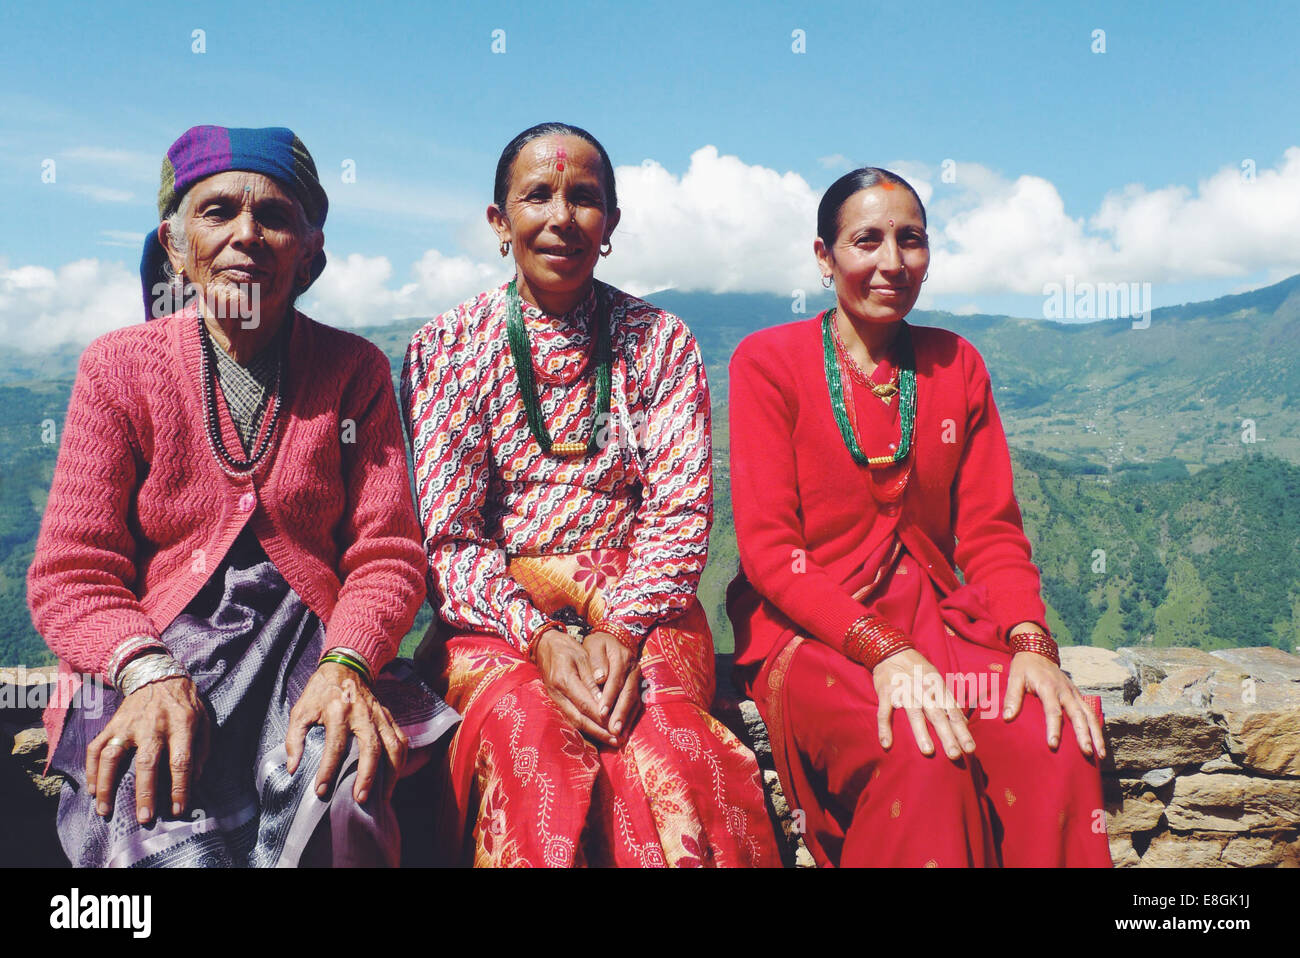 Porträt von drei einheimischen nepalesischen Frauen, die auf einer Wand in einem Bergdorf in Nepal sitzen Stockfoto